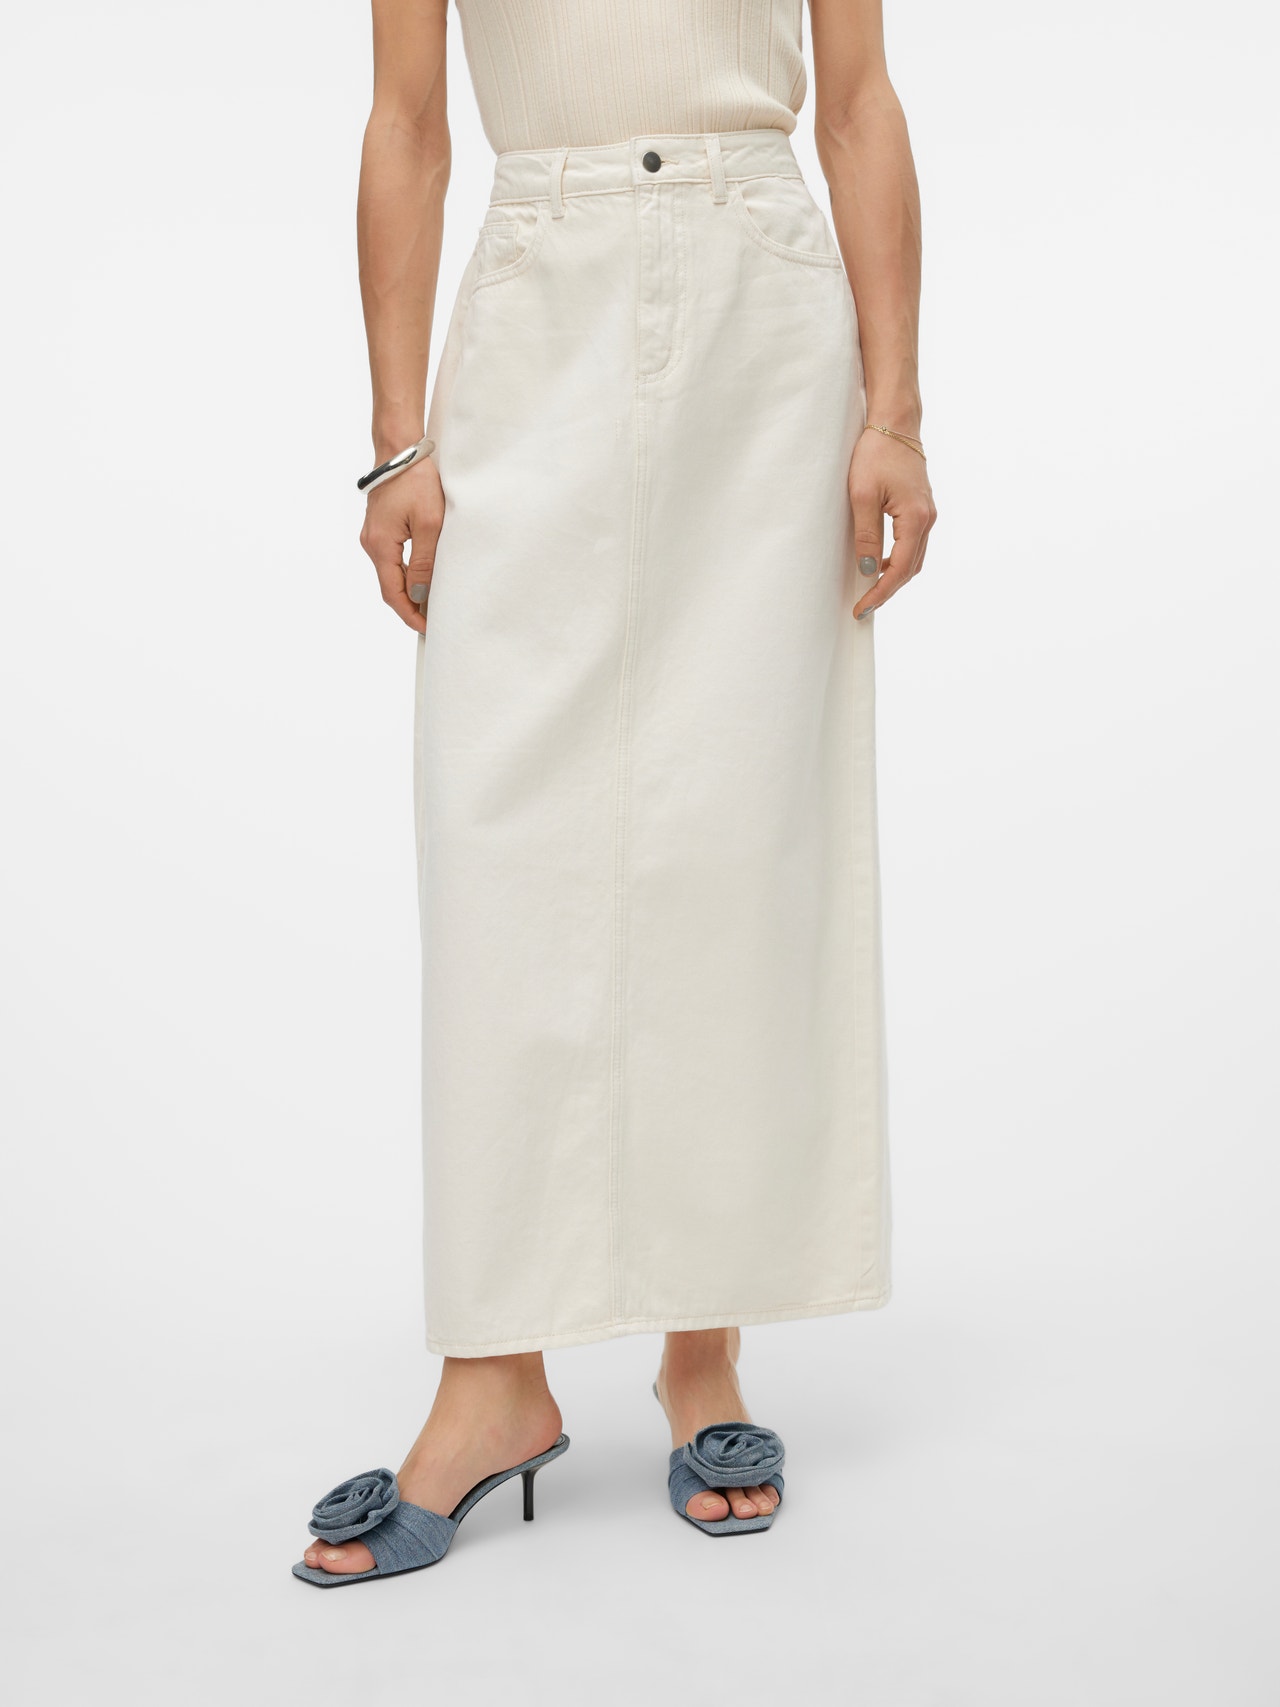 Vero Moda VMGRACIA High waist Long Skirt -Ecru - 10306289